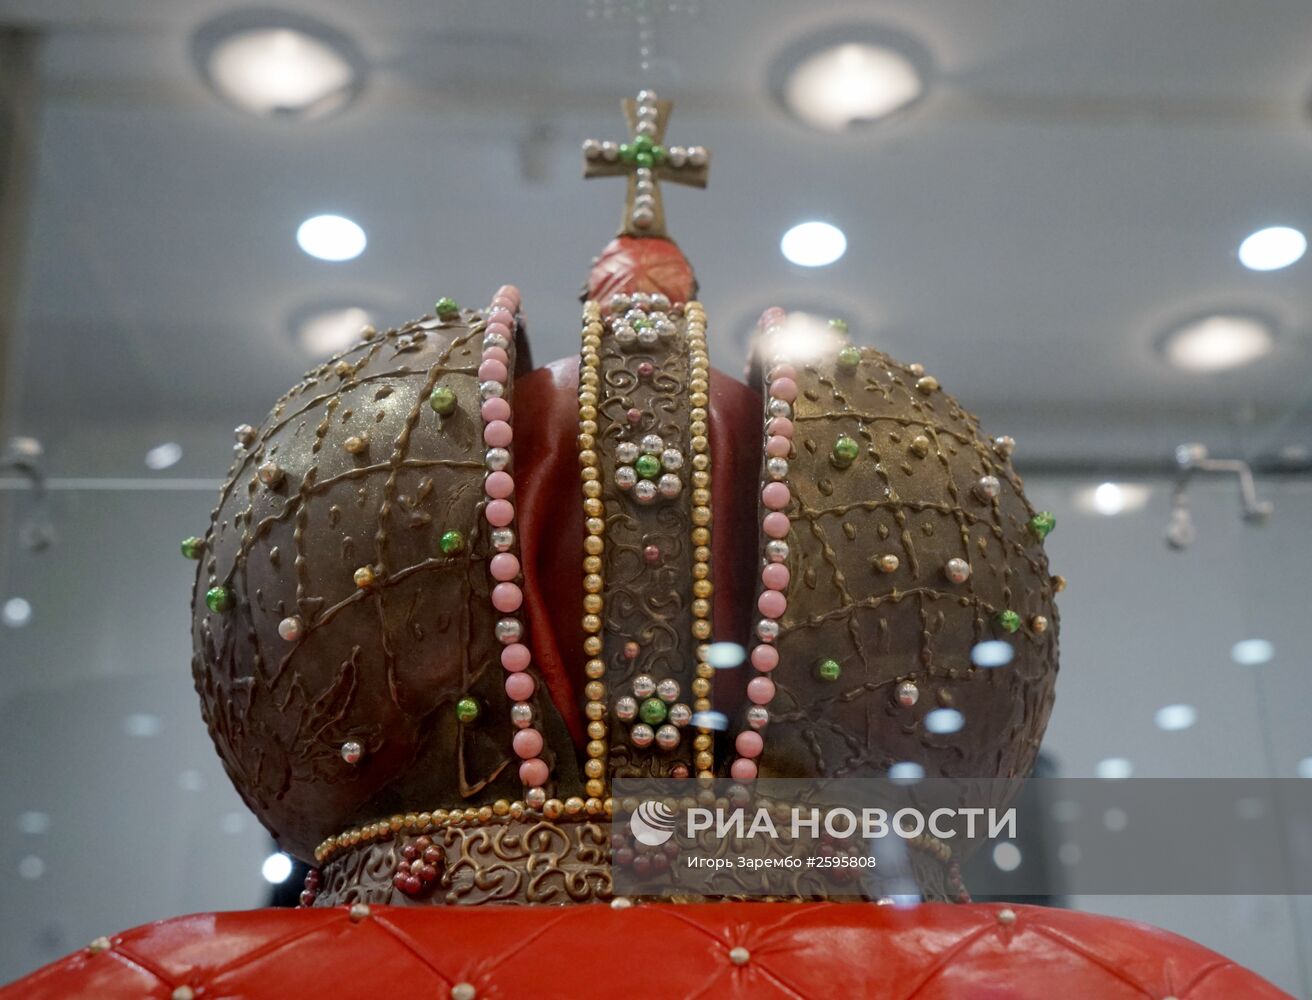 Выставка крымского шоколада в Калининграде